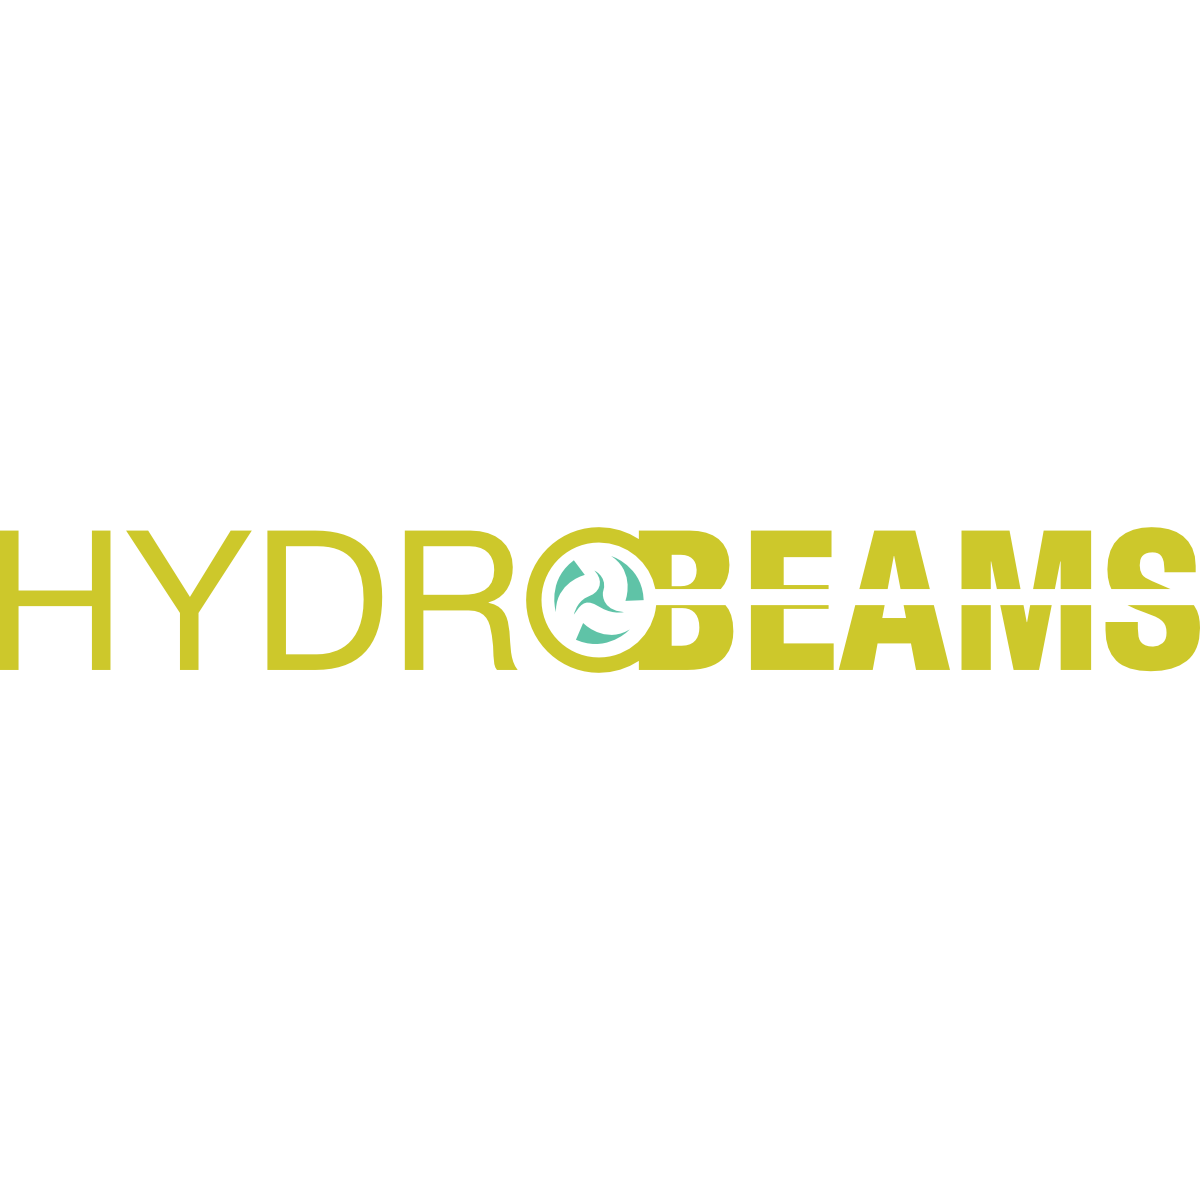 Hydrobeams Pvt Ltd